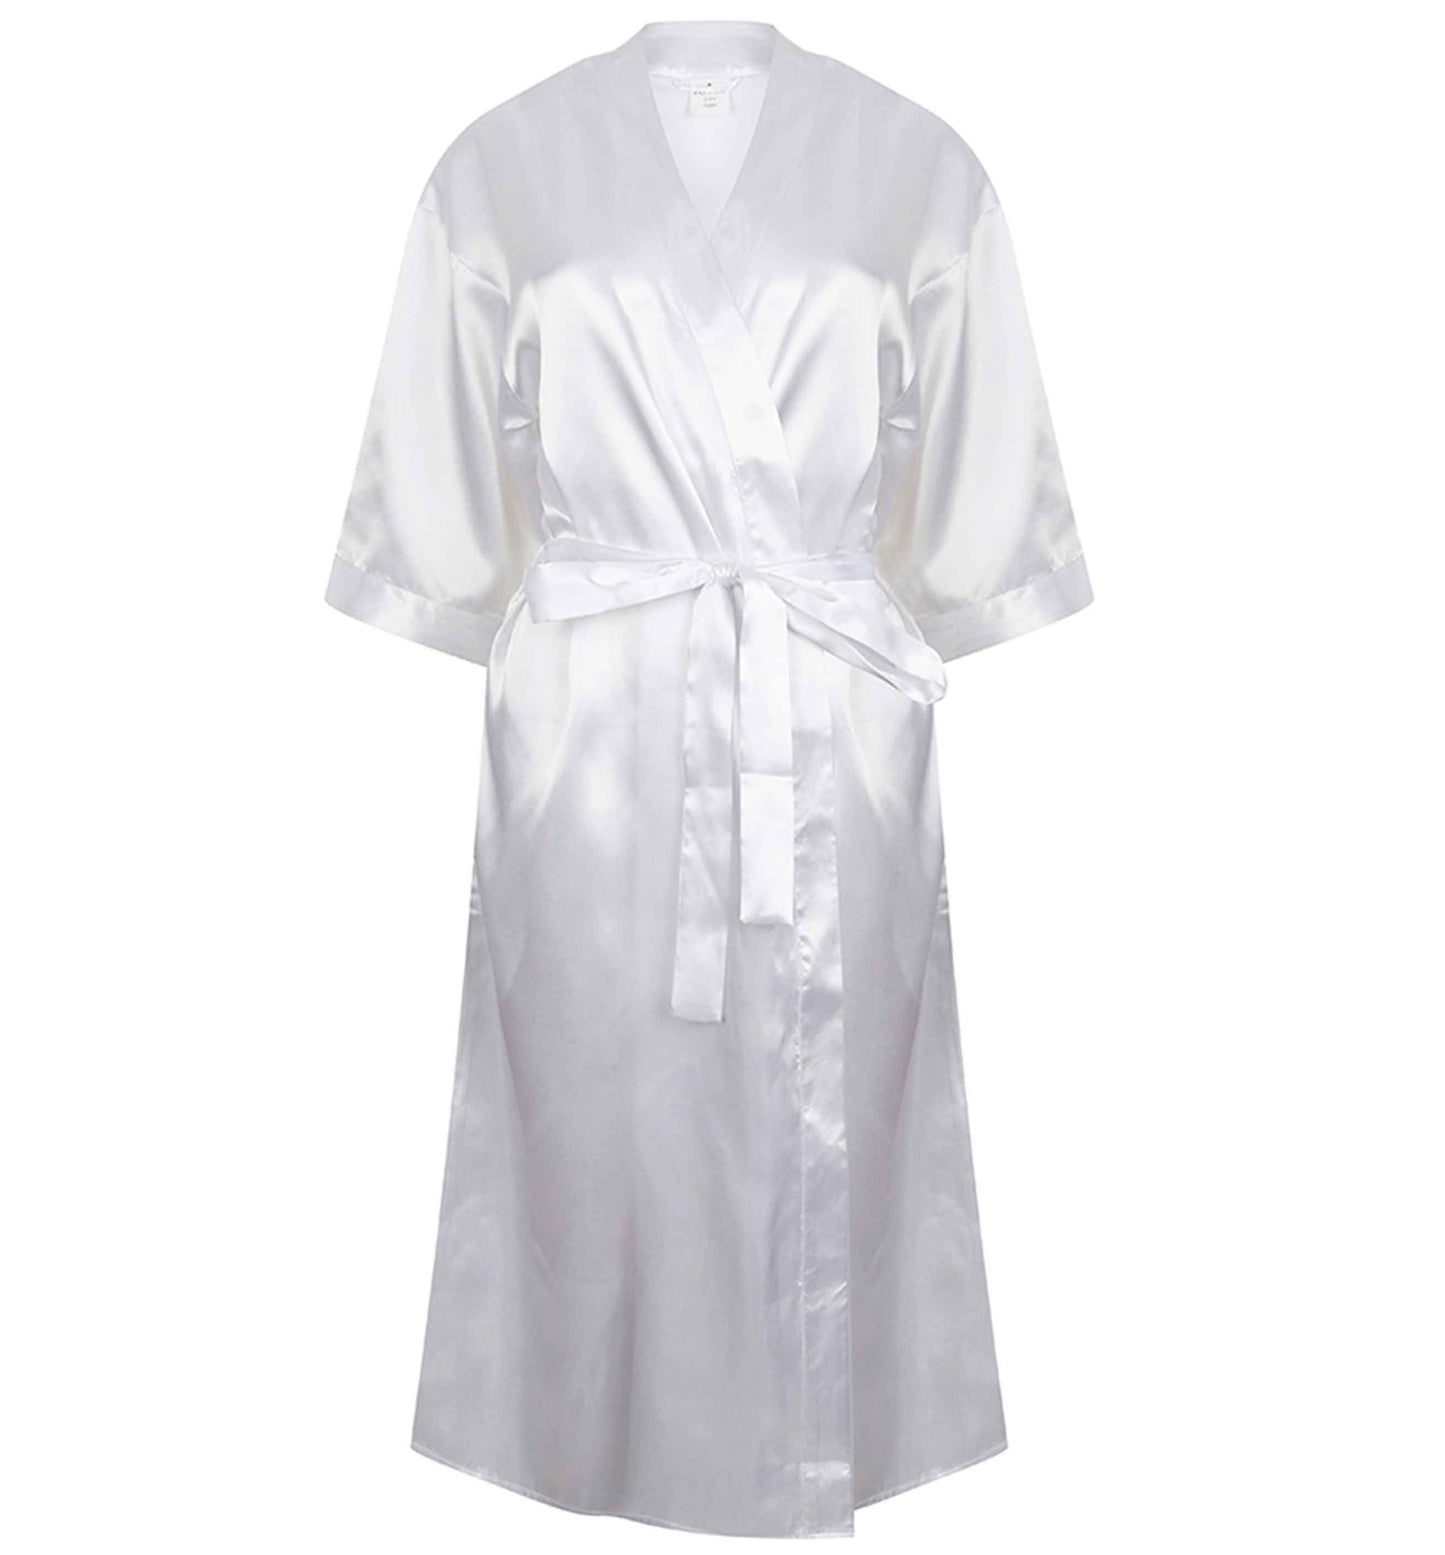 Bad sister | 8-18 | Kimono style satin robe | Ladies dressing gown